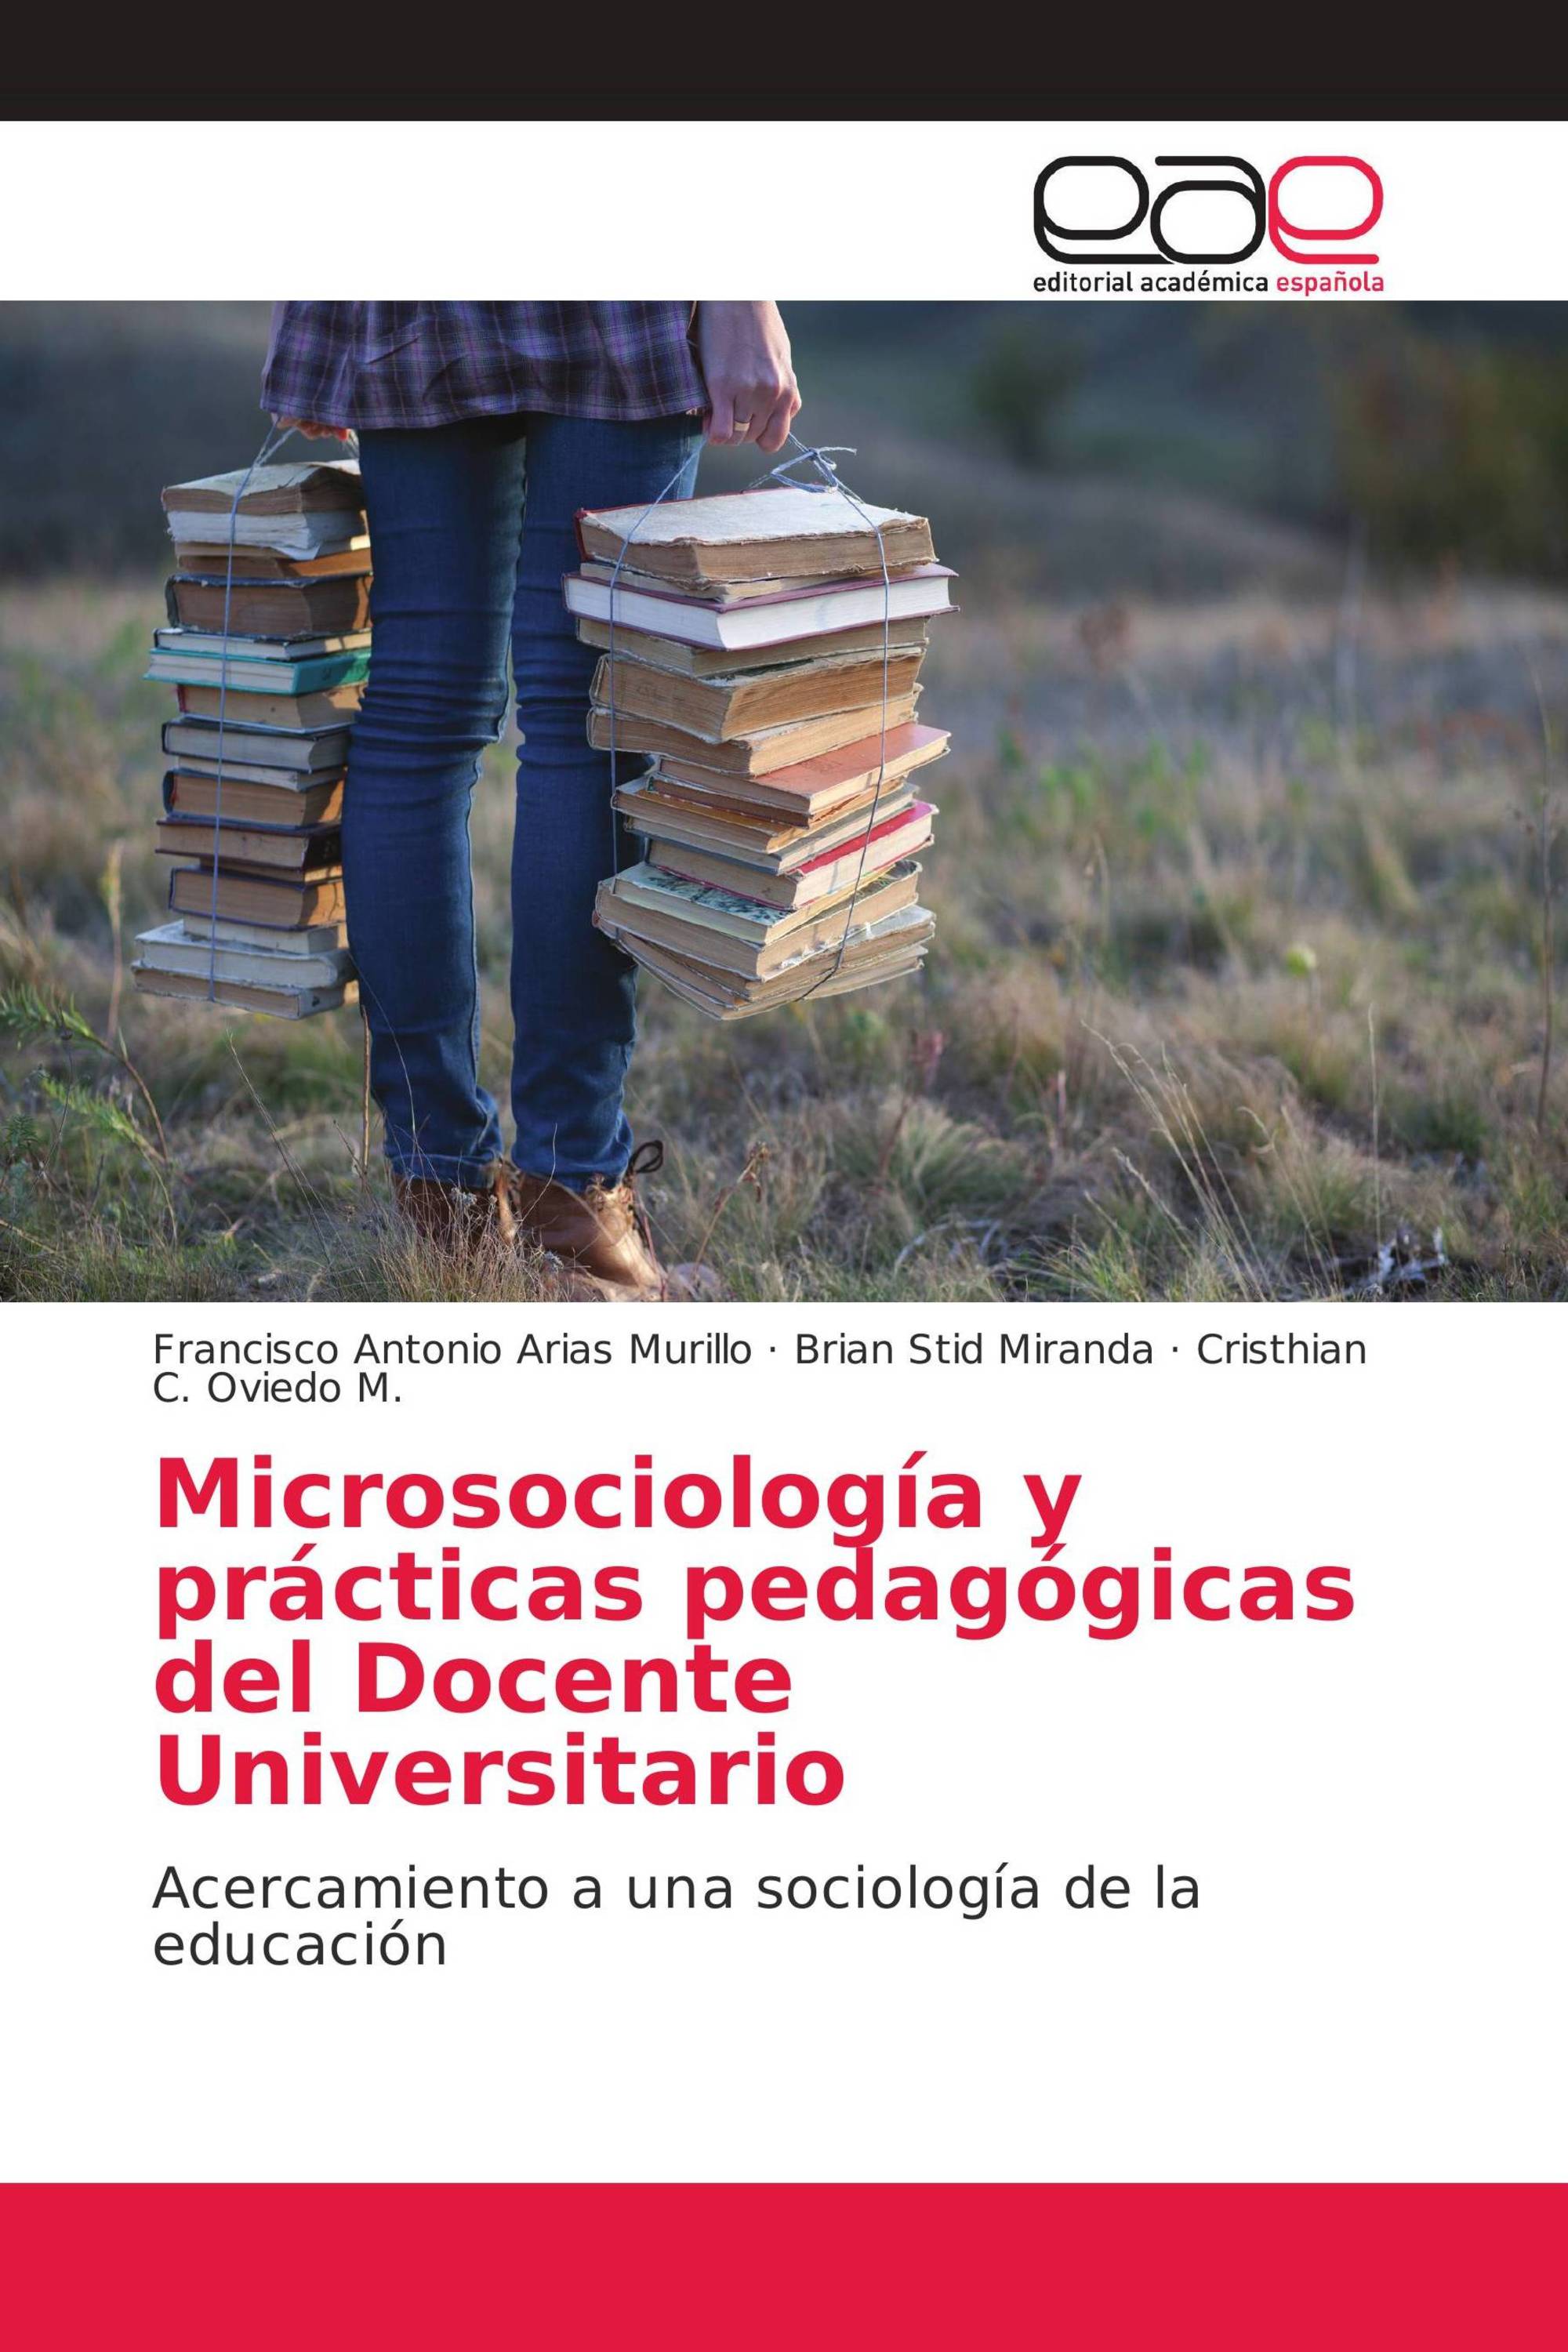 Microsociología y prácticas pedagógicas del Docente Universitario